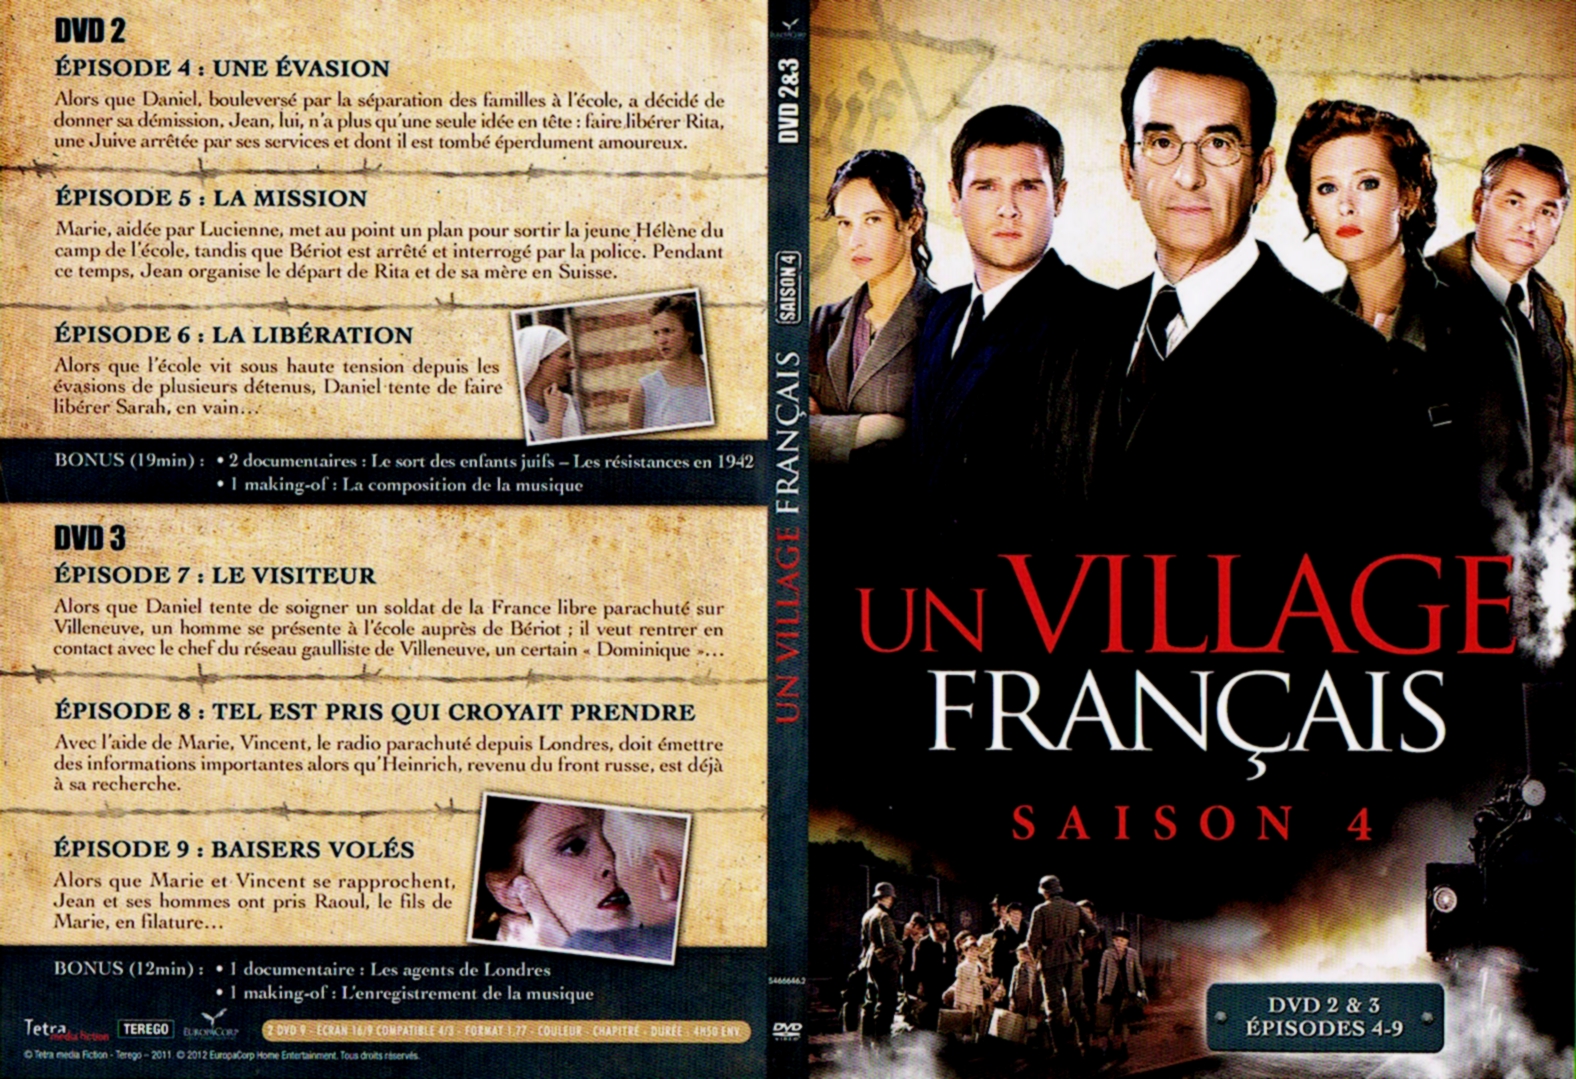 Jaquette DVD Un village francais Saison 4 DVD 2